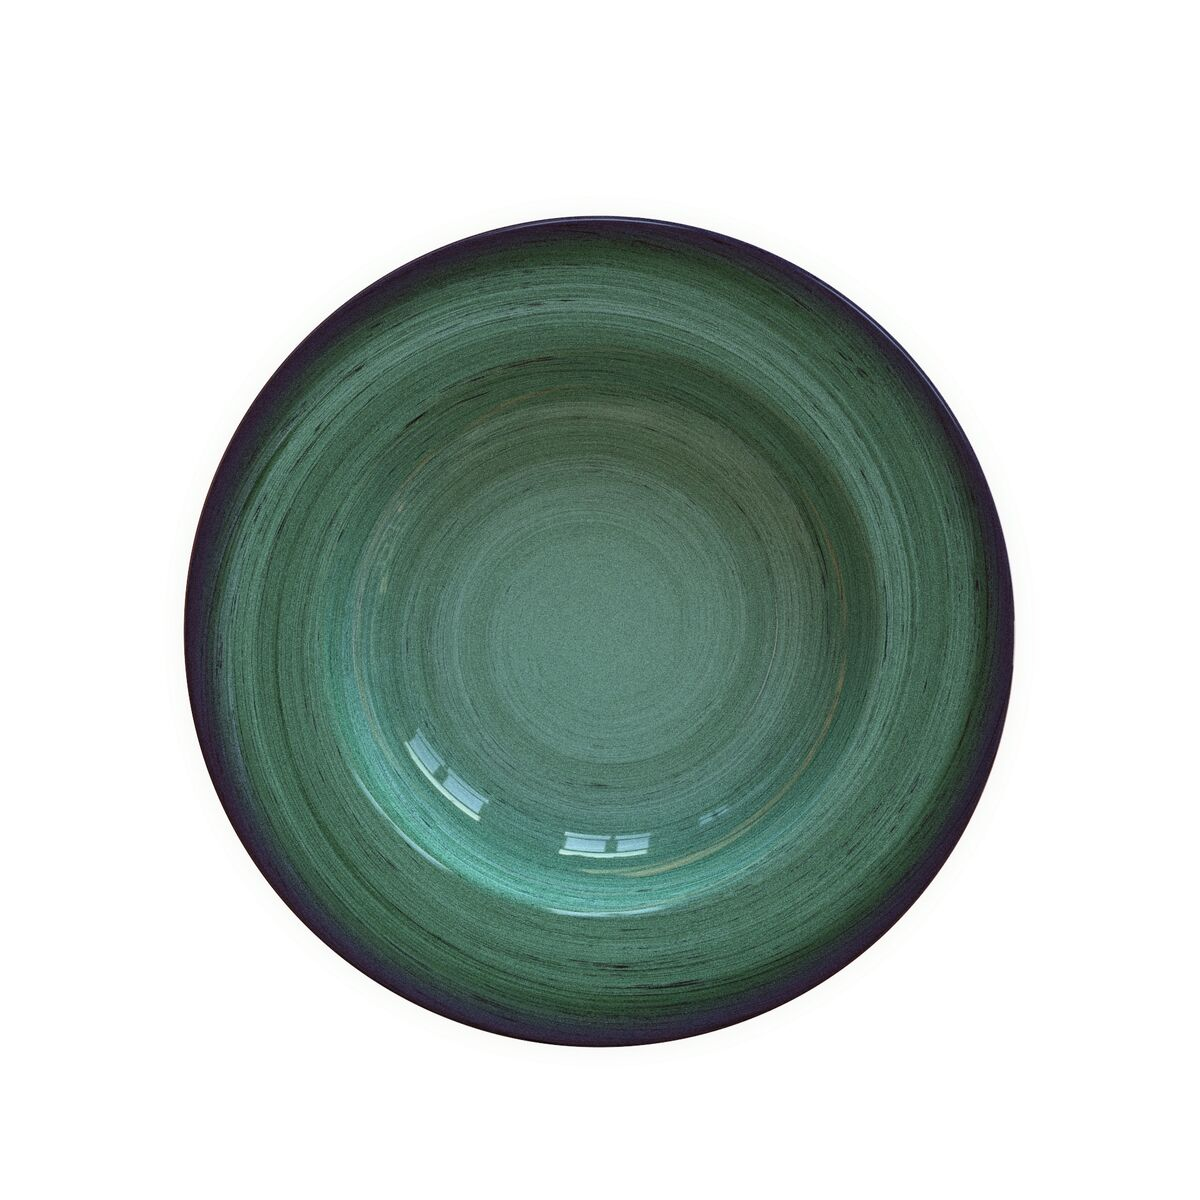 Prato Fundo Tramontina Rústico Verde em Porcelana Decorada 23 cm